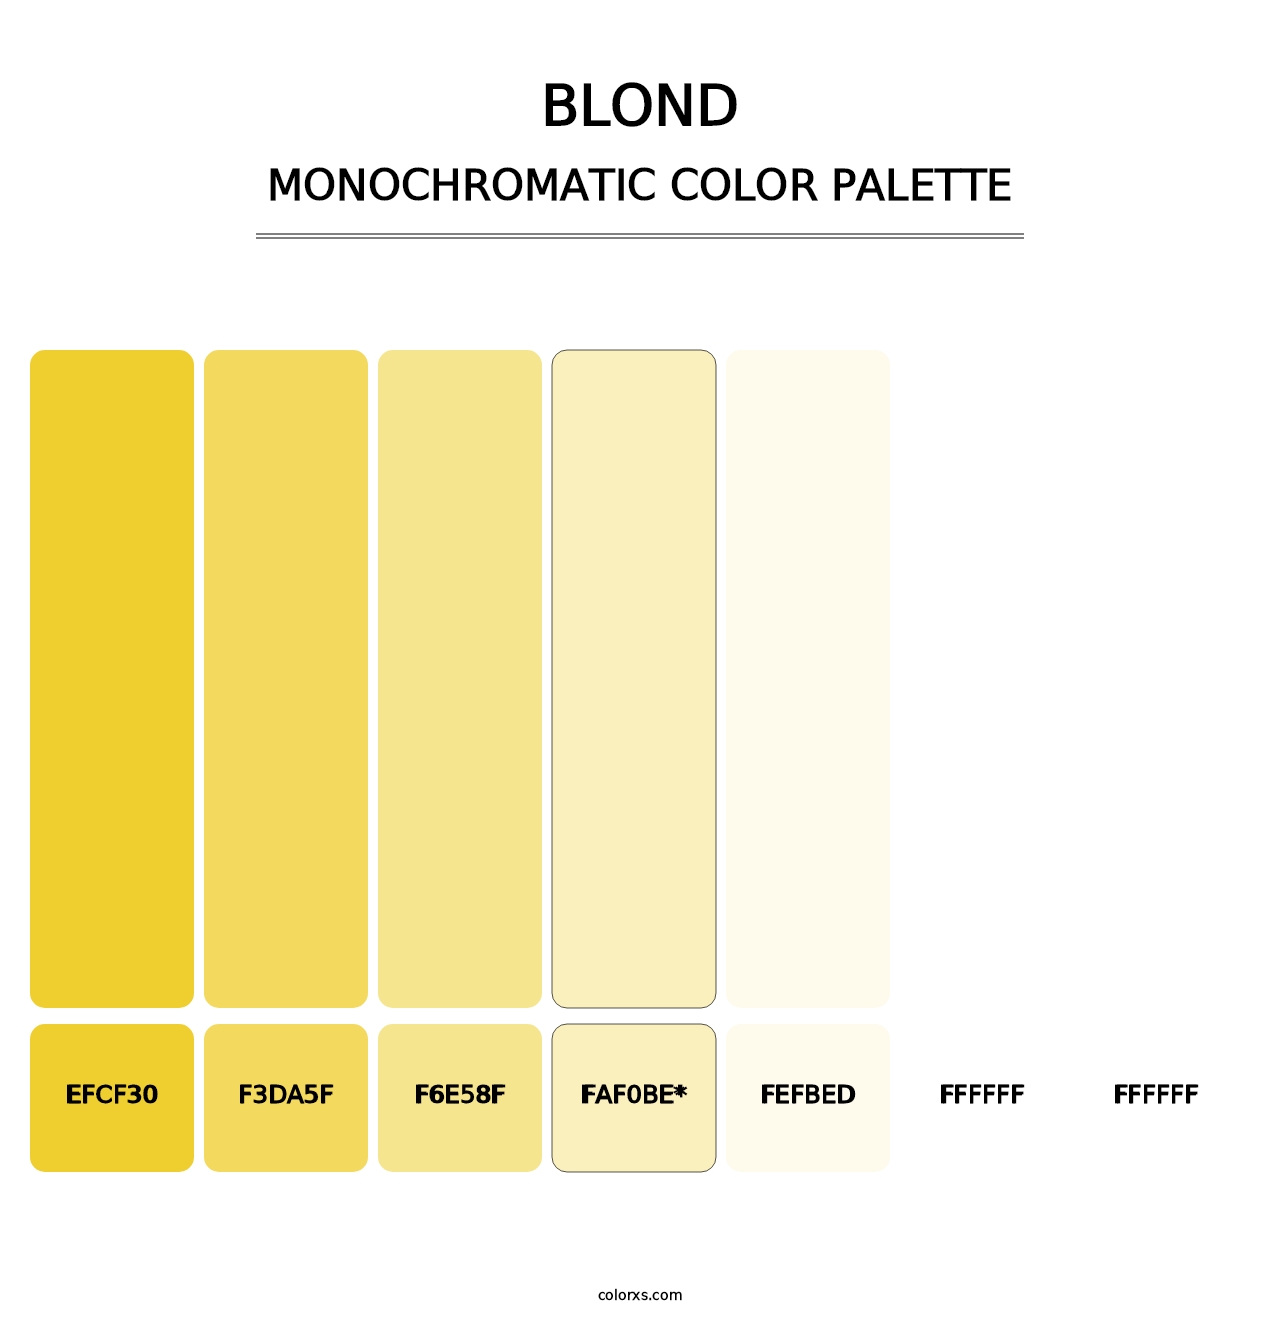 Blond - Monochromatic Color Palette